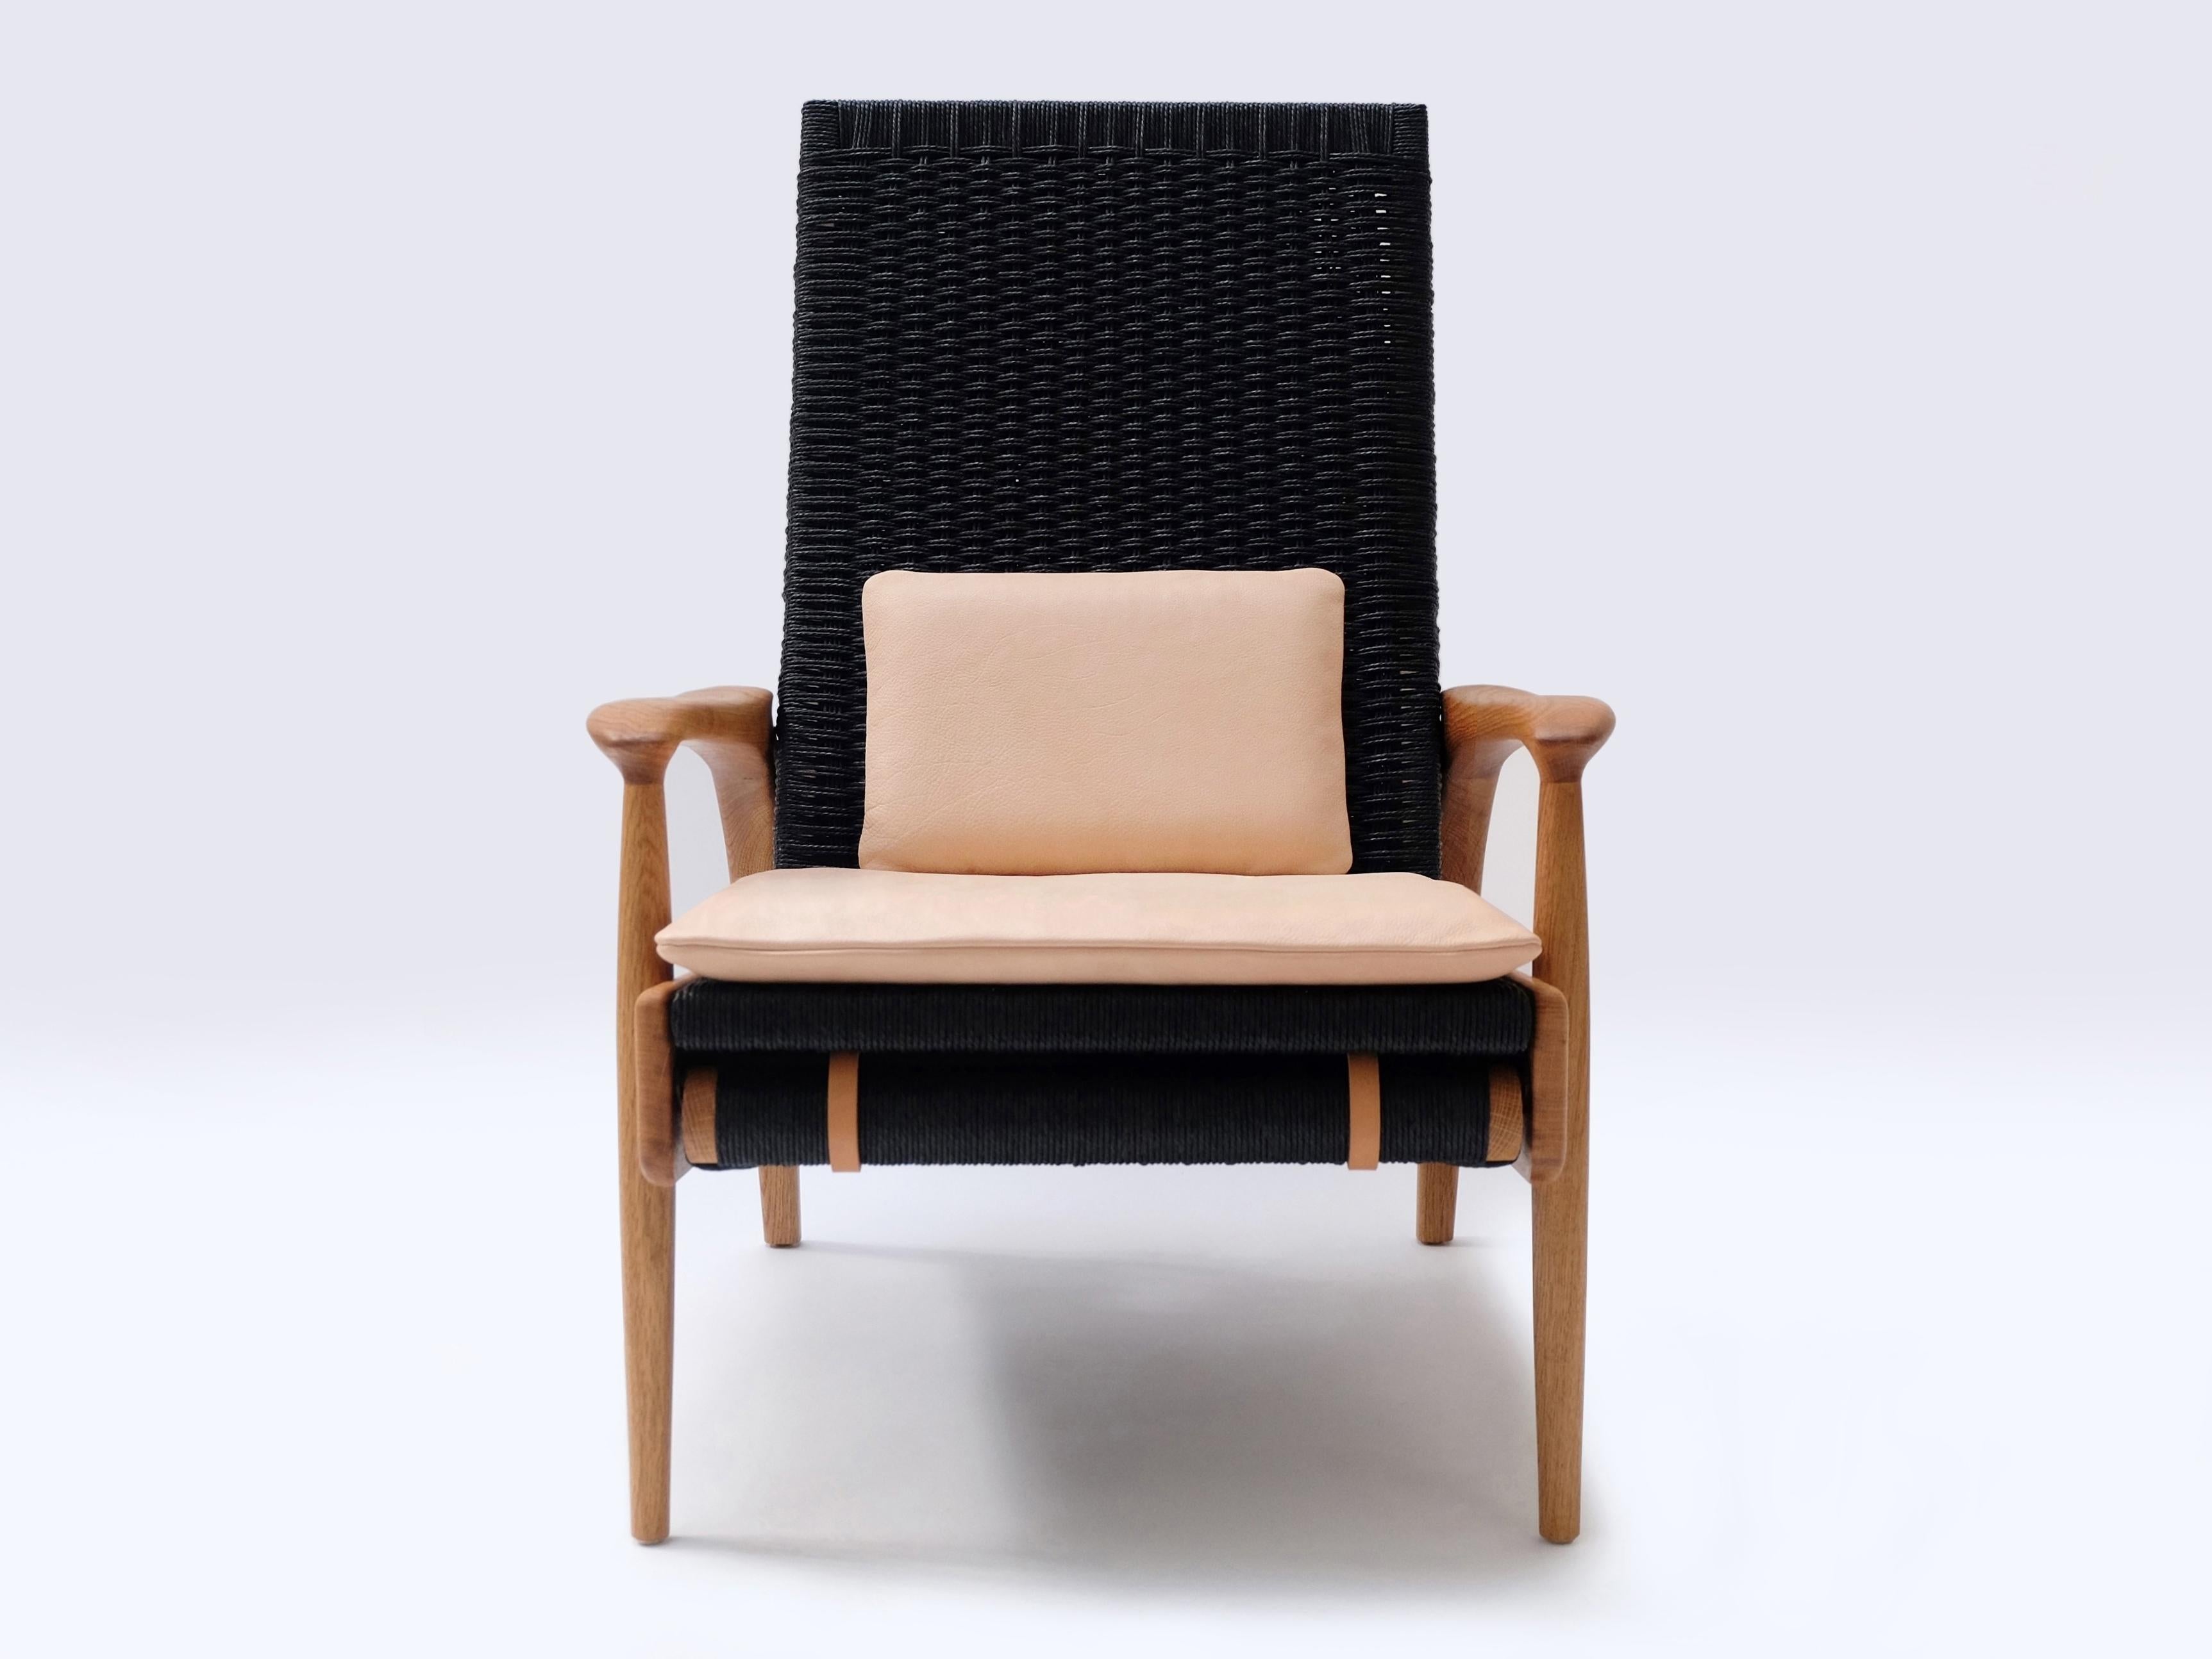 Maßgefertigte, handgefertigte Eco-Lounge-Stühle FENDRIK von Studio180degree
Abgebildet in nachhaltiger, massiver, natürlich geölter Eiche und kontrastierendem Original Danish Cord in Schwarz

Edel - taktil - raffiniert - nachhaltig
Reclining Eco